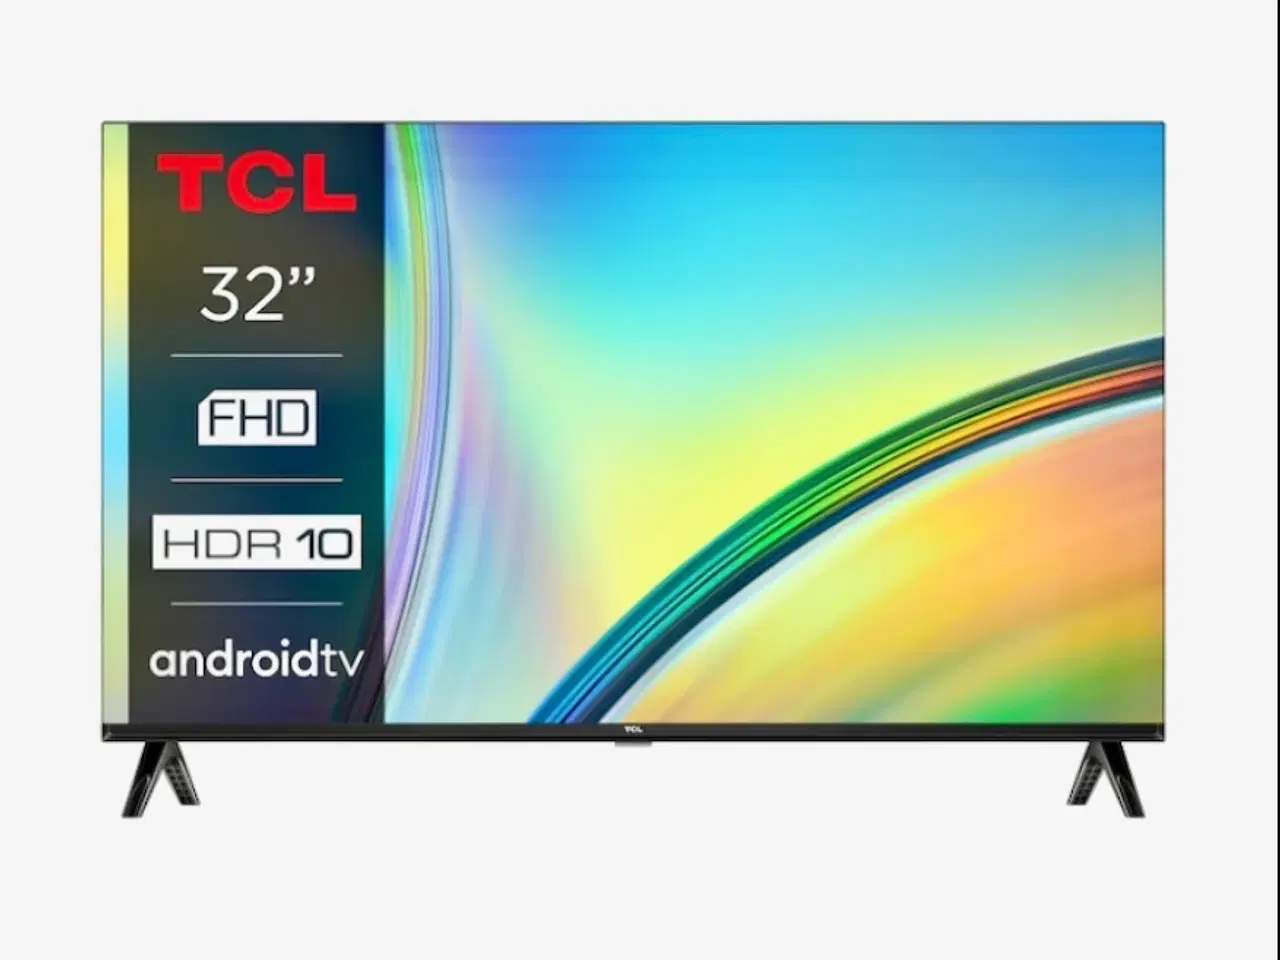 Billede 1 - 32” TCL FHD7900 Smart TV